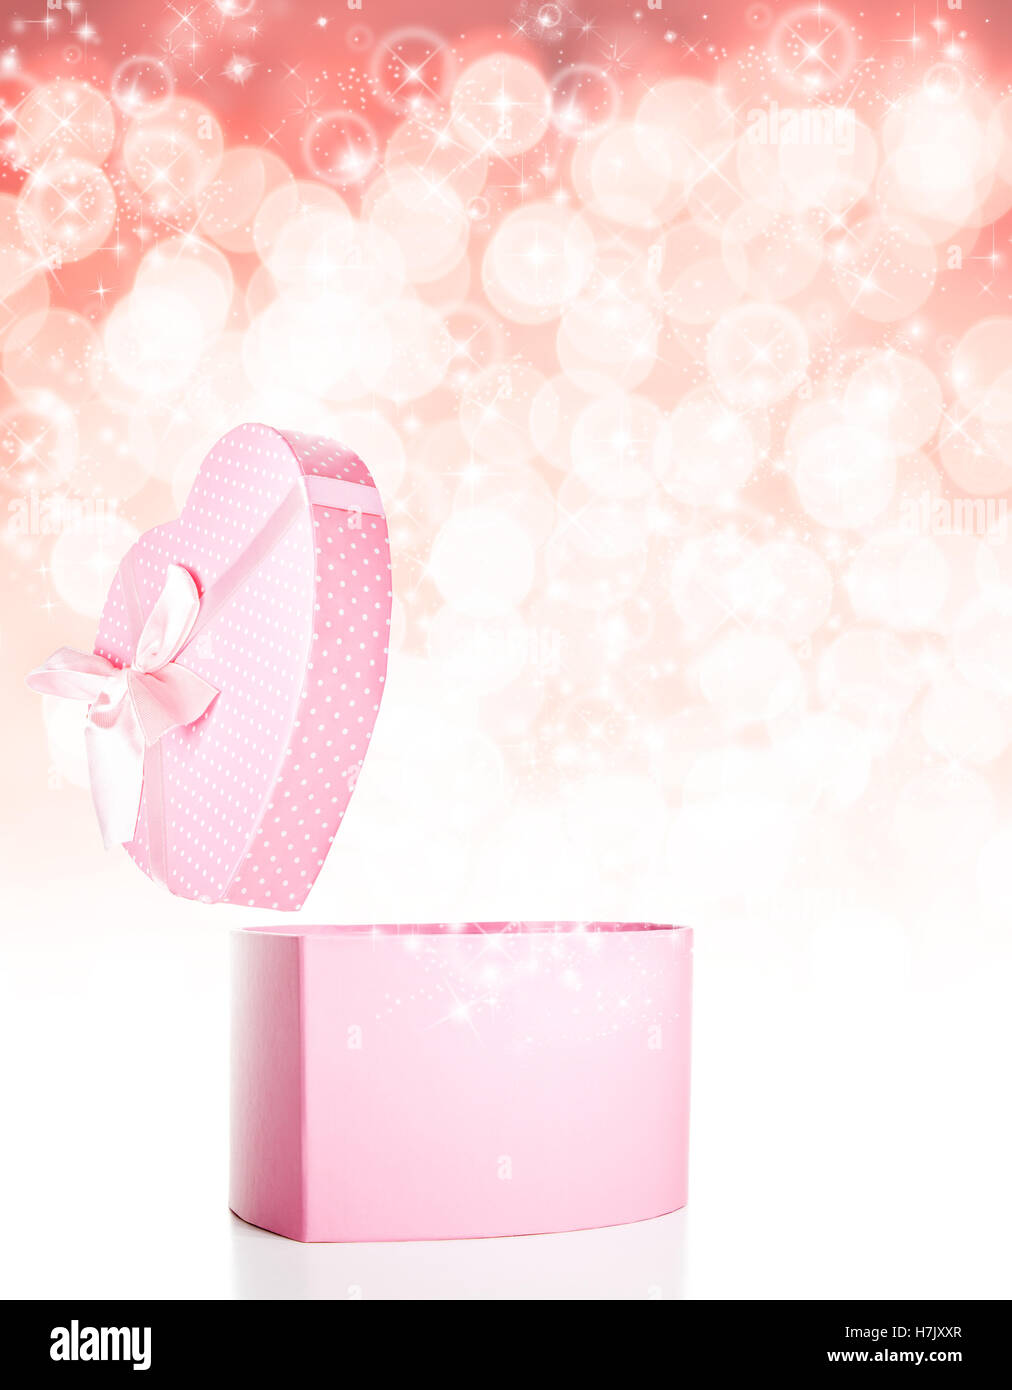 Rosa, polka dot confezione regalo sorpresa con galleggiante di glitter e spazio di copia Foto Stock